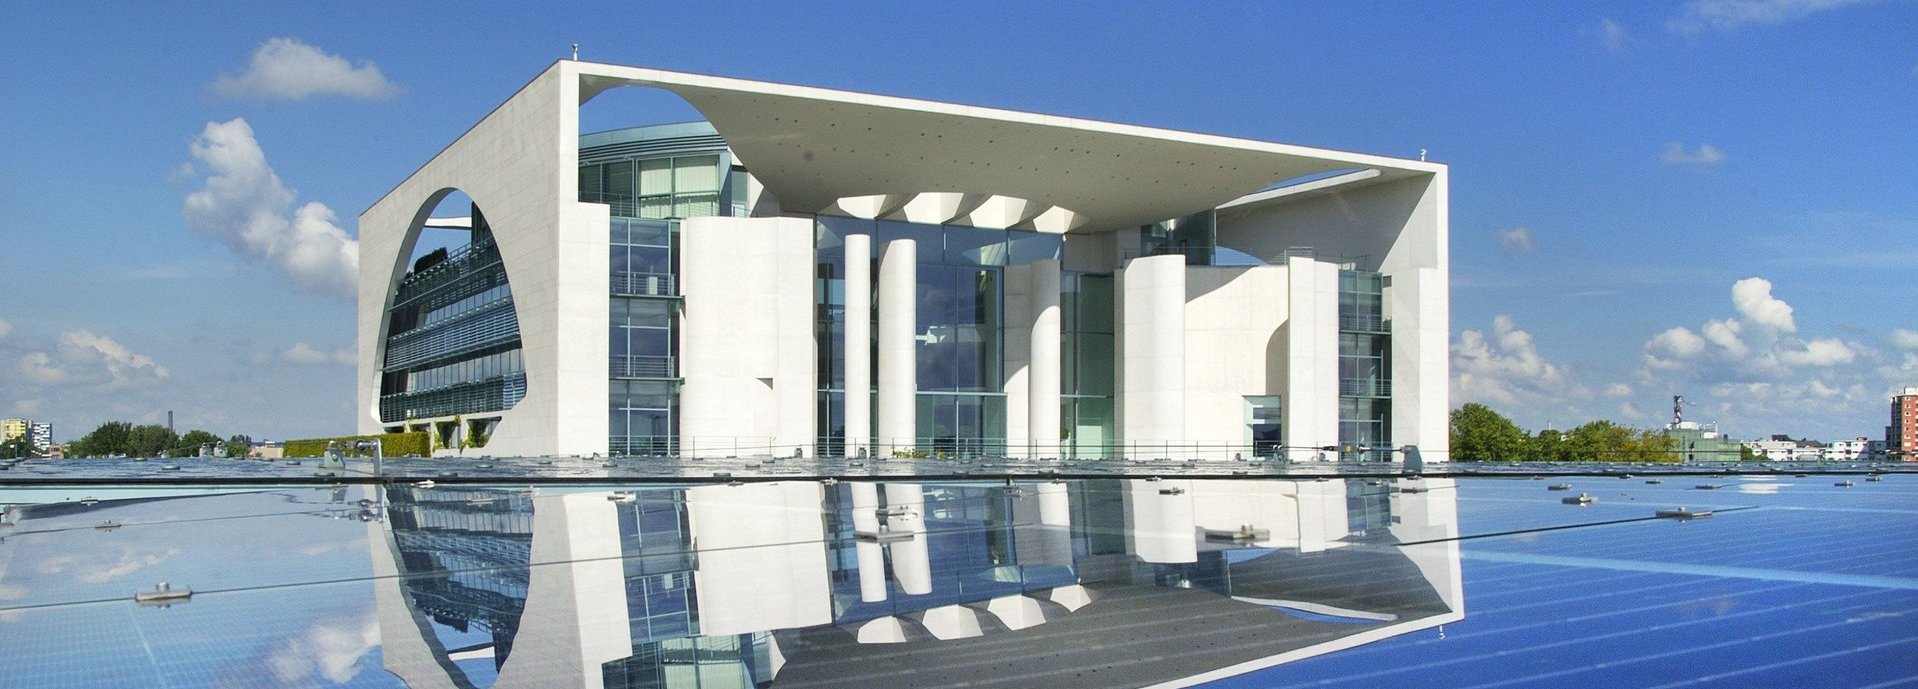 Auf dem Dach des Bundeskanzleramt installiert ist eine Photovoltaikanlage mit 150  Kilowatt  Spitzenleistung . Sonne, Sonnenenergie, Solarenergie, regenerativ, Energie, umweltfreundlich, erneuerbar, Strom, Elektrizitaet. Berlin Tiergarten. 28. Mai 2004